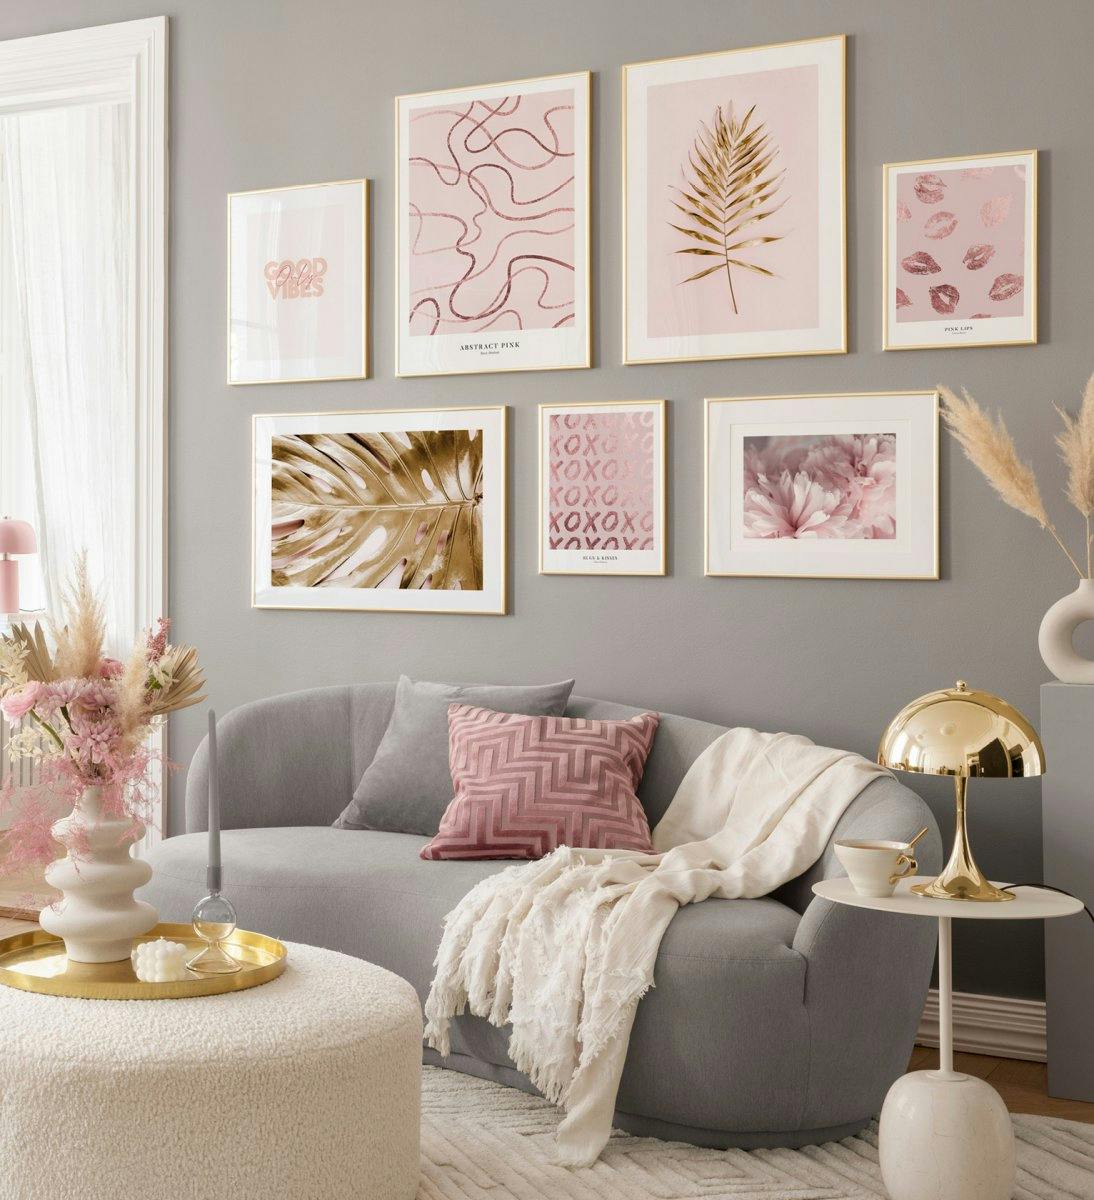 Pinkki harmaa tauluseinä abstraktilla line art julisteilla ja kultaisilla julisteilla kultakehyksissä olohuoneen tauluiksi